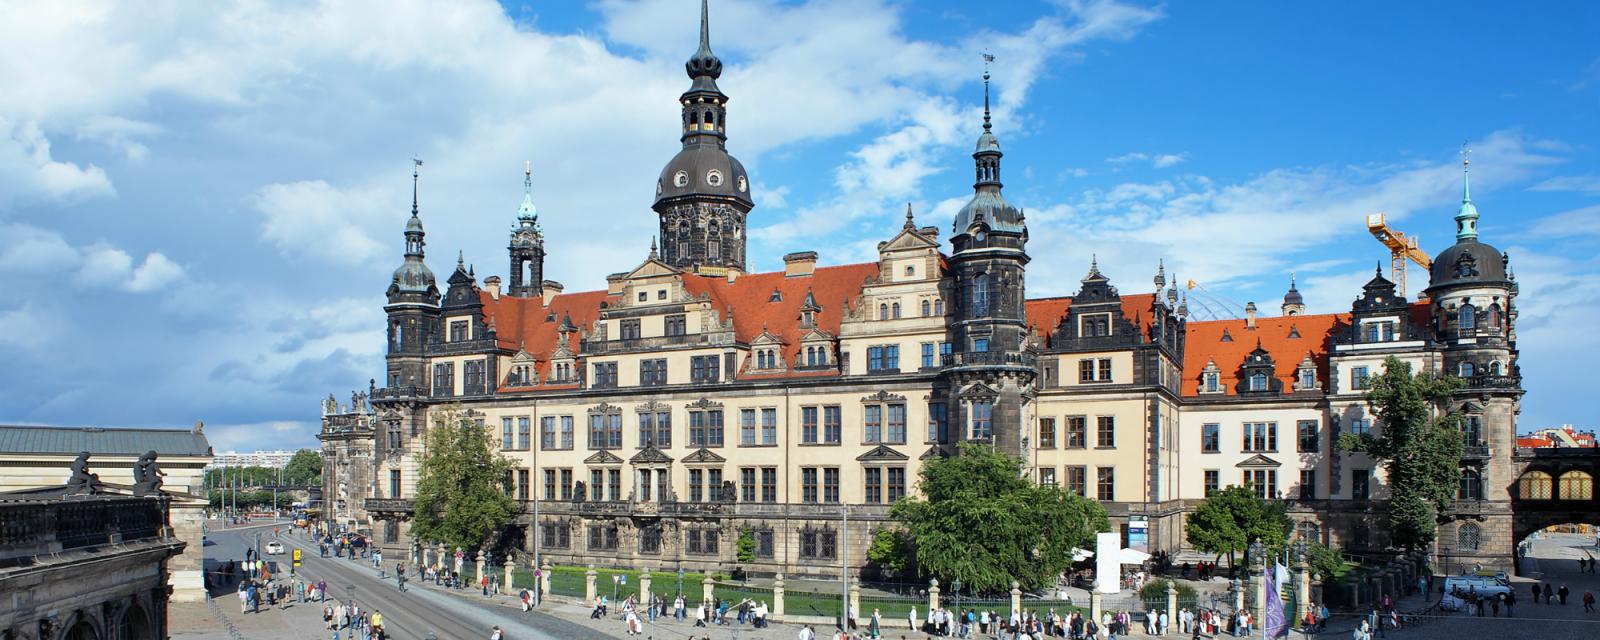 Terug in de tijd: het koninklijke paleis van Dresden 